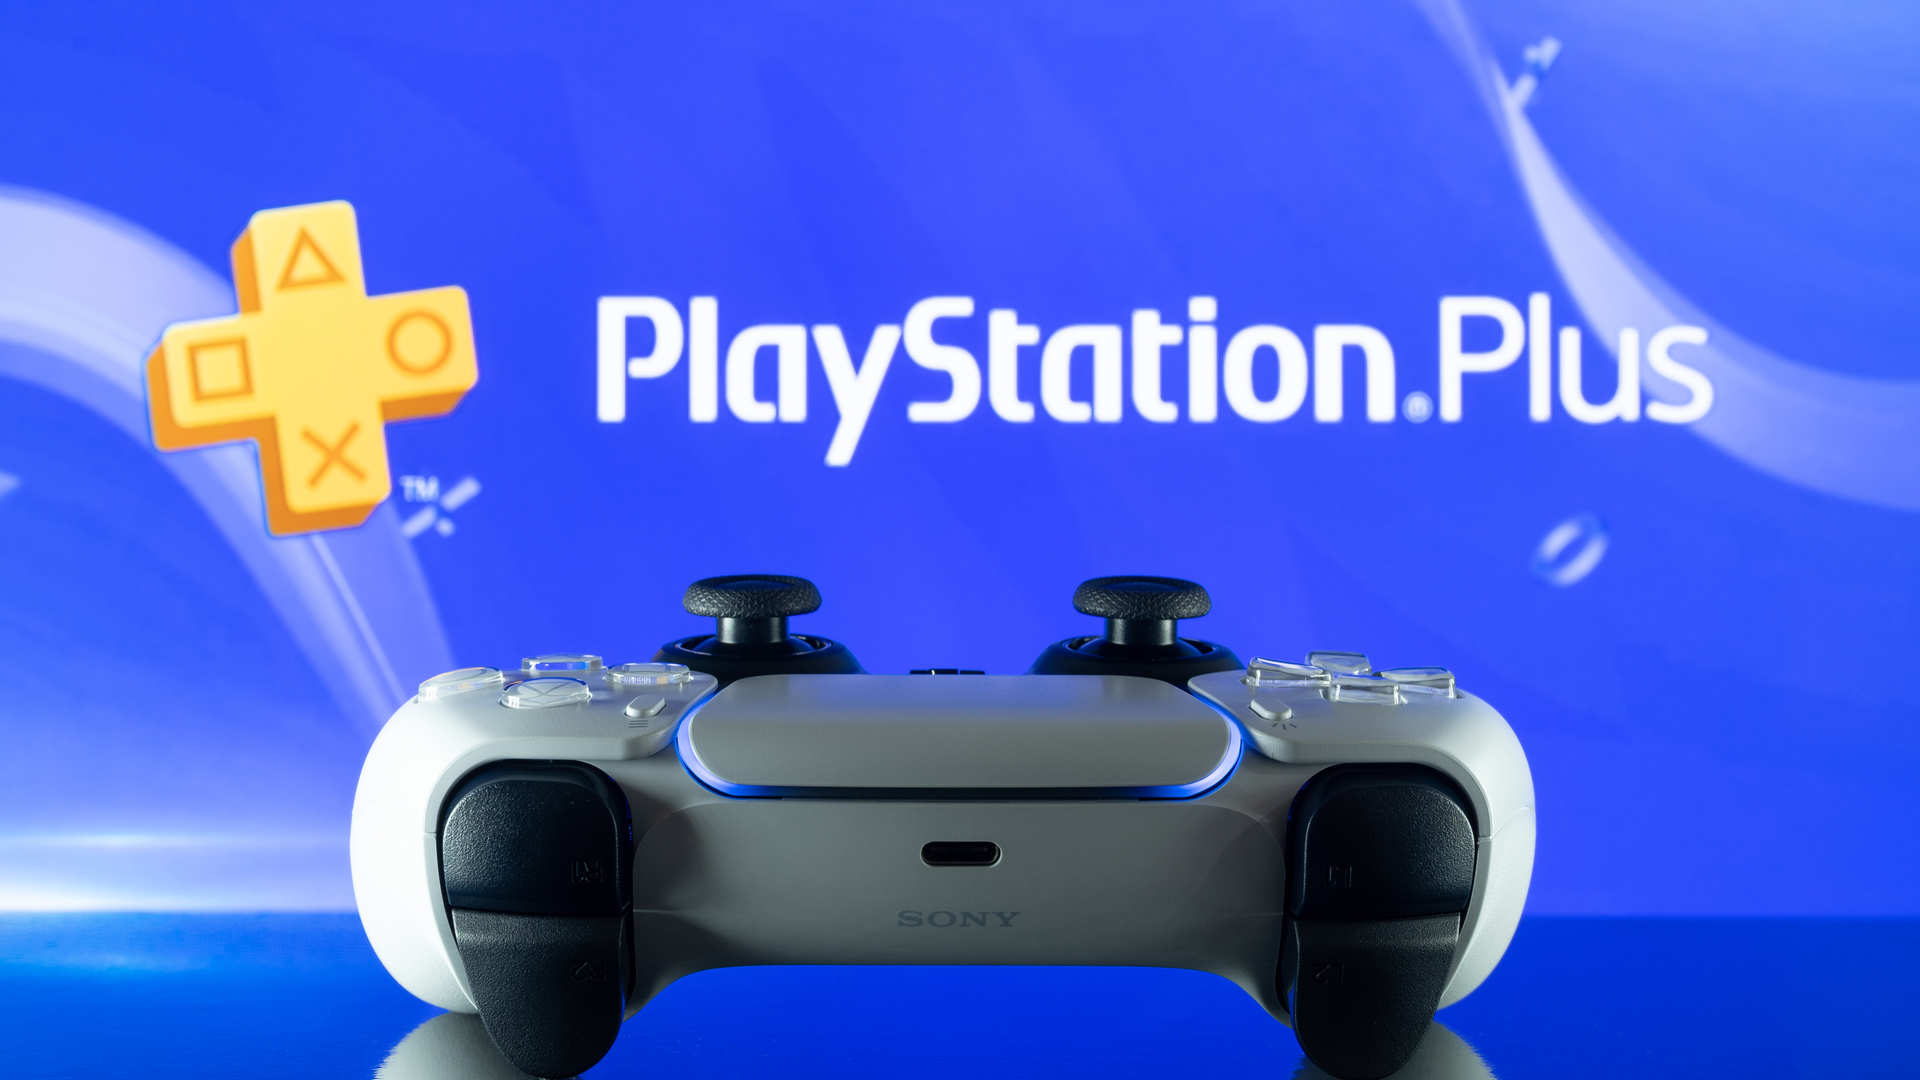 DualSense PS5-Controller vor dem PlayStation Plus-Logo